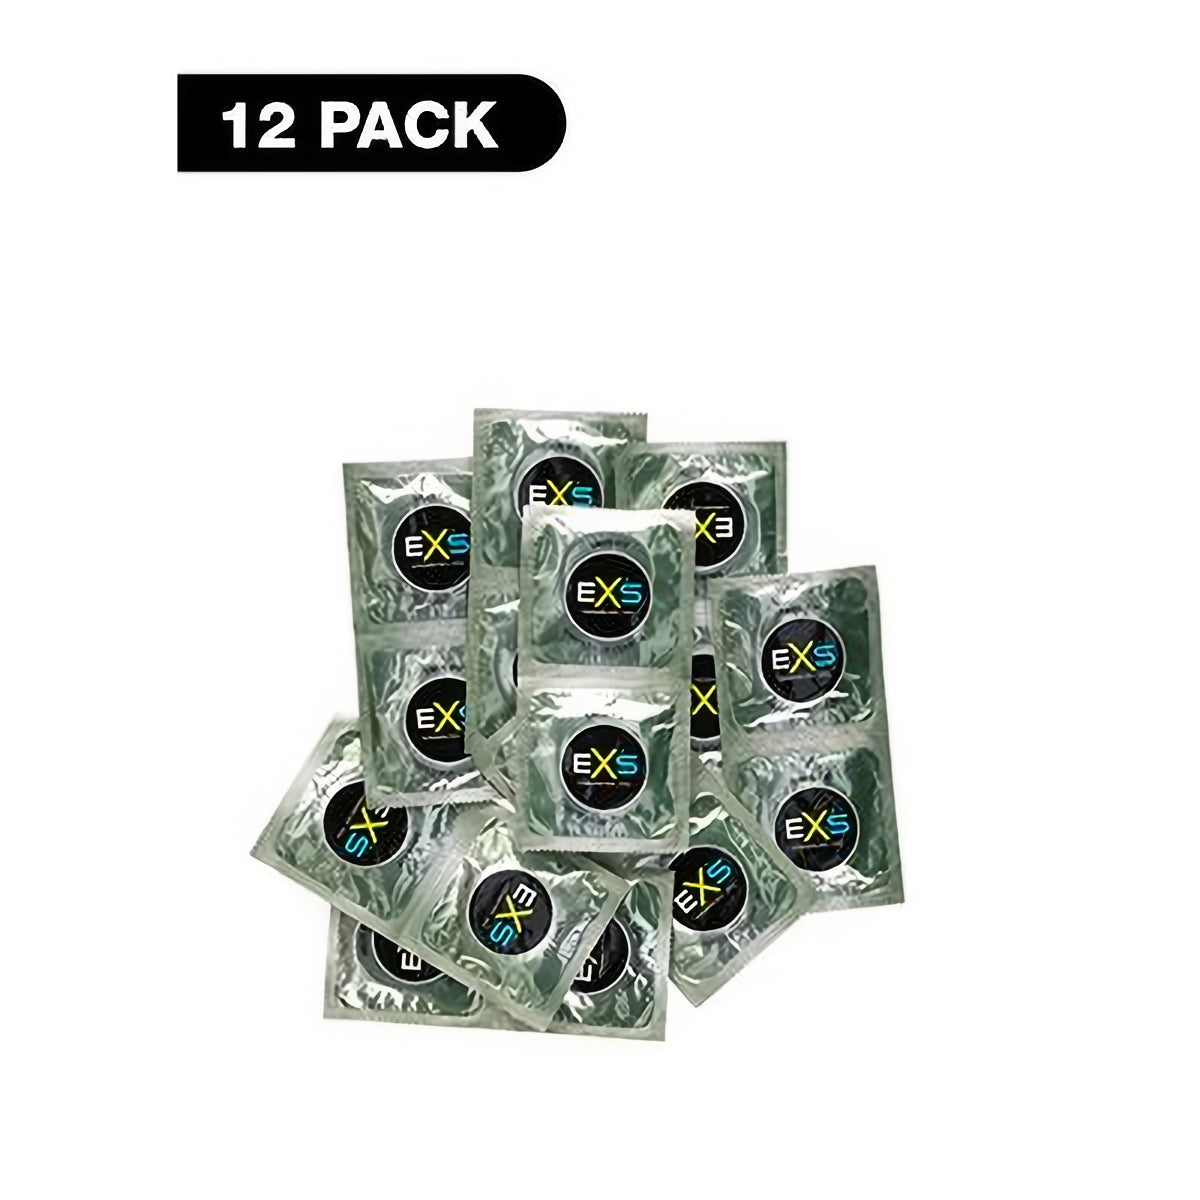 EXS Snug Fit - Condoms - 12 Pieces - EroticToyzProducten,Veilige Seks, Verzorging Hulp,Veilige Seks,Condooms voor Mannen,,MannelijkEXS